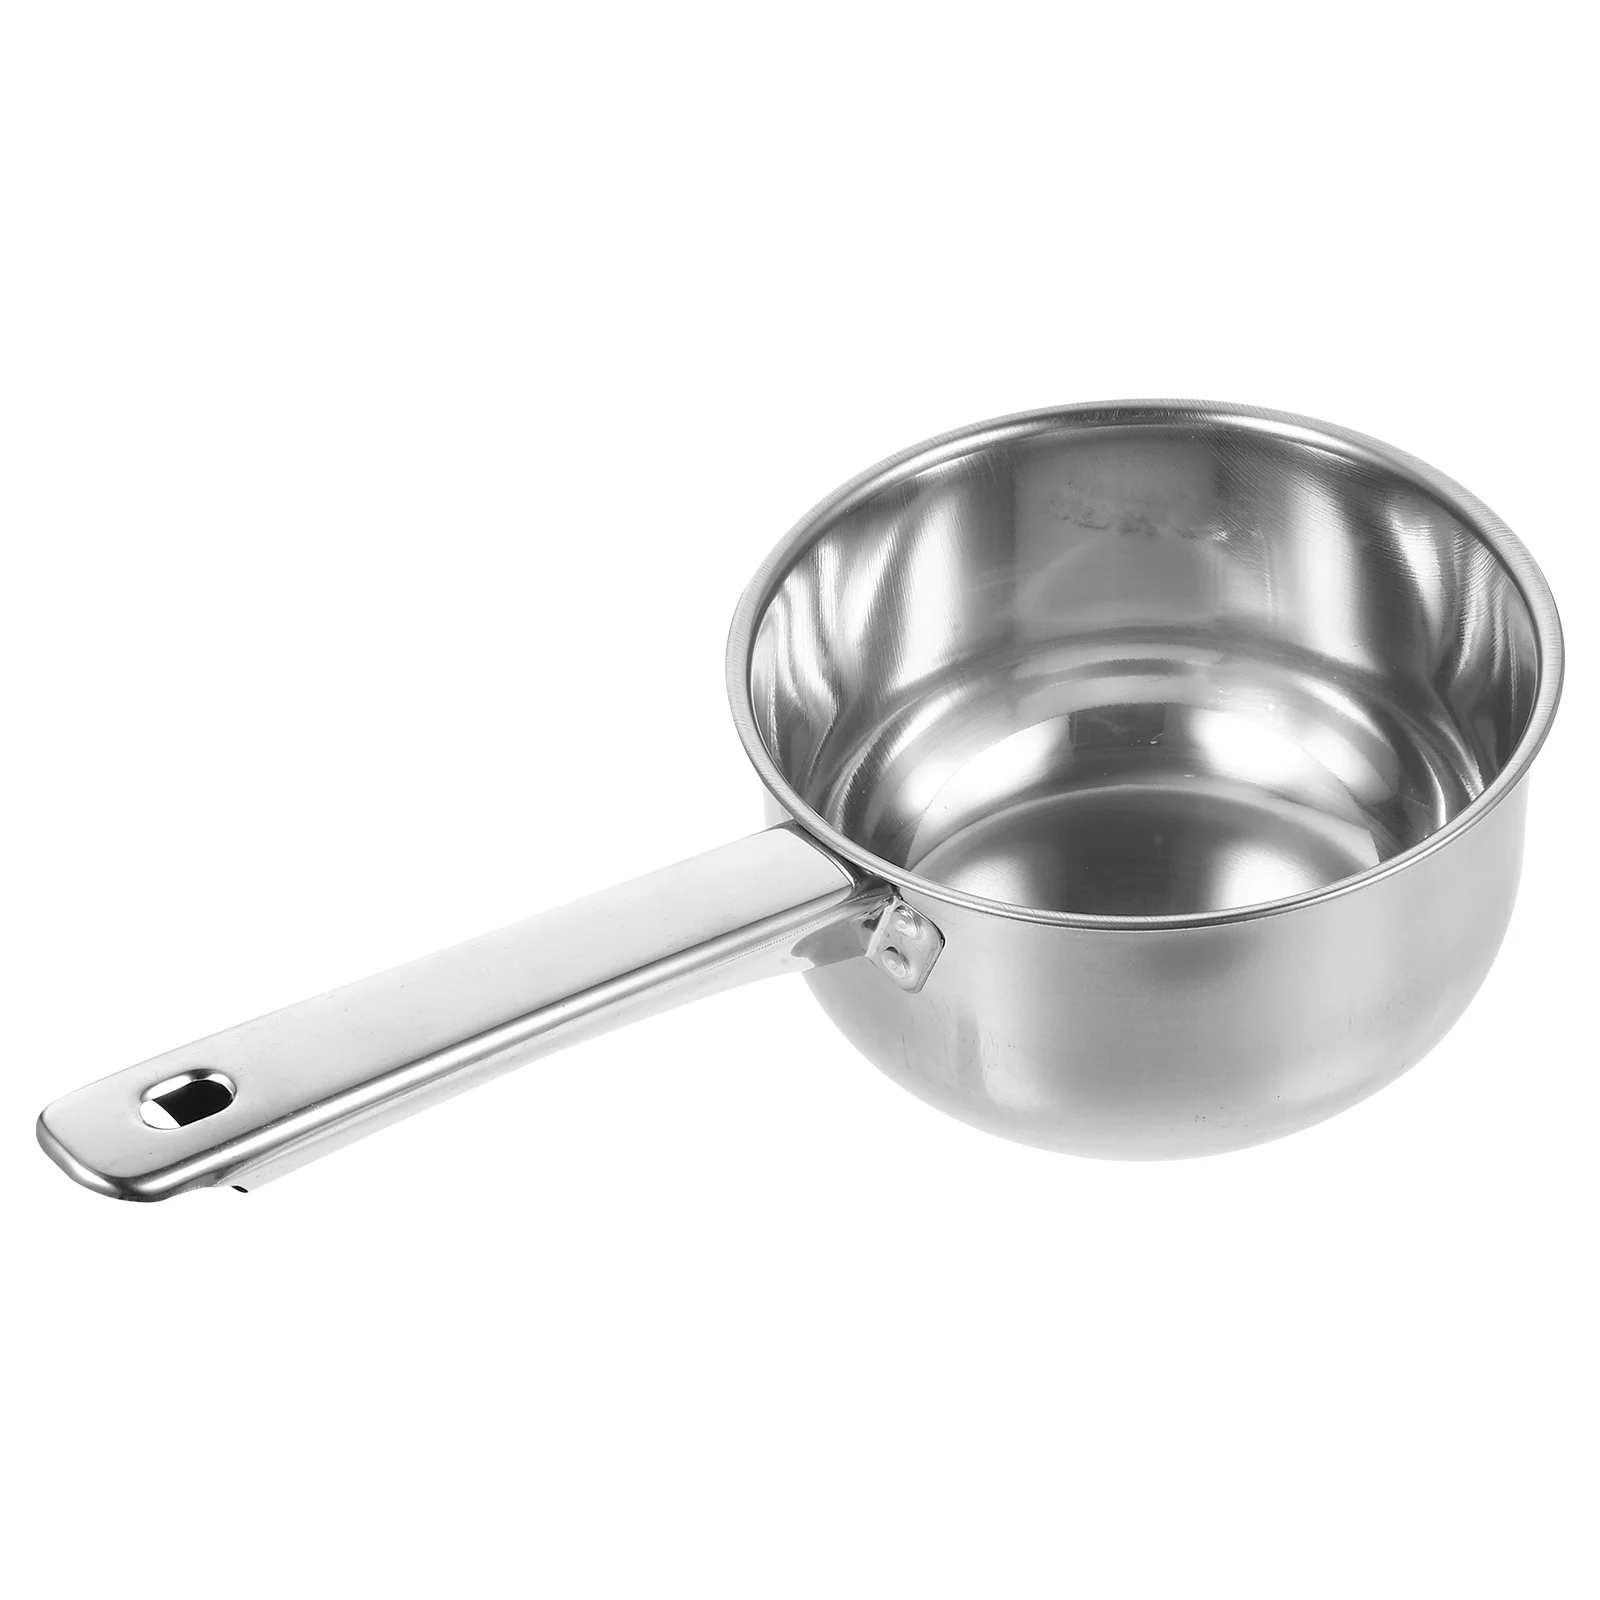 

Metal Spoons Stainless Steel Scoop Food Ladle Cup Water Dipper Handle Kitchen Ladles Pot